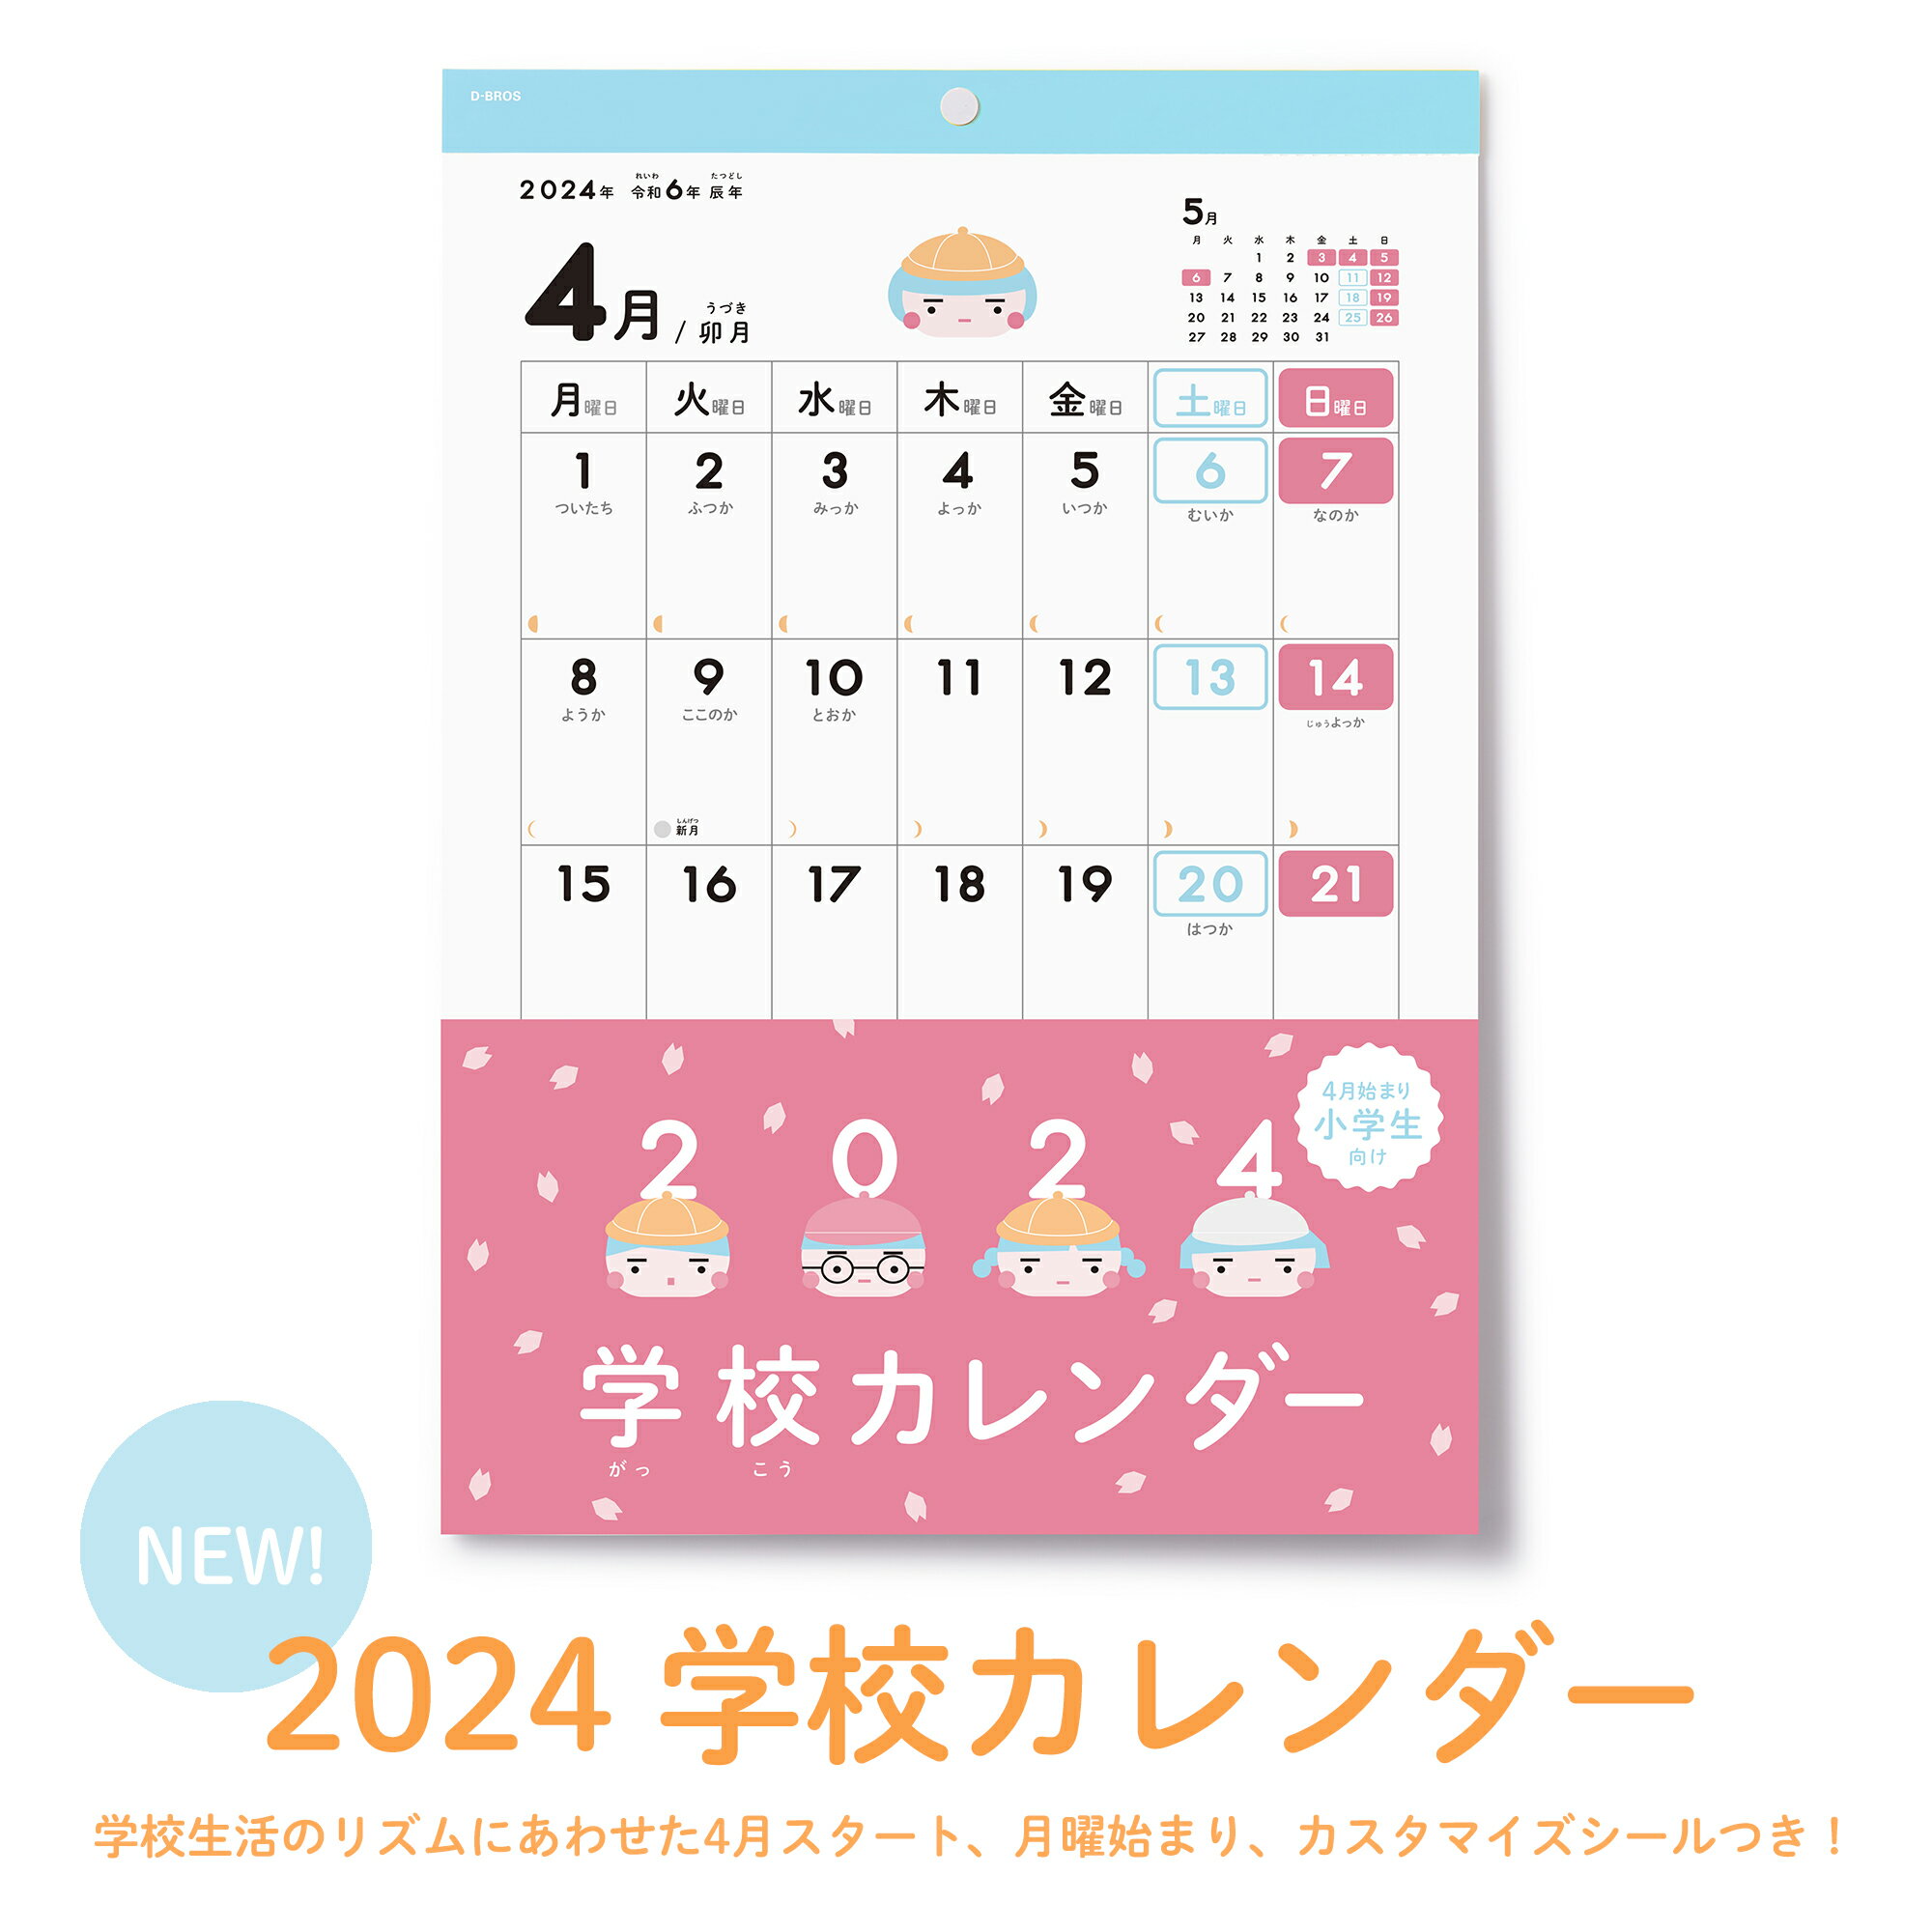 【中古】ワンピース エターナル・カレンダー (新世界編) ロロノア・ゾロ